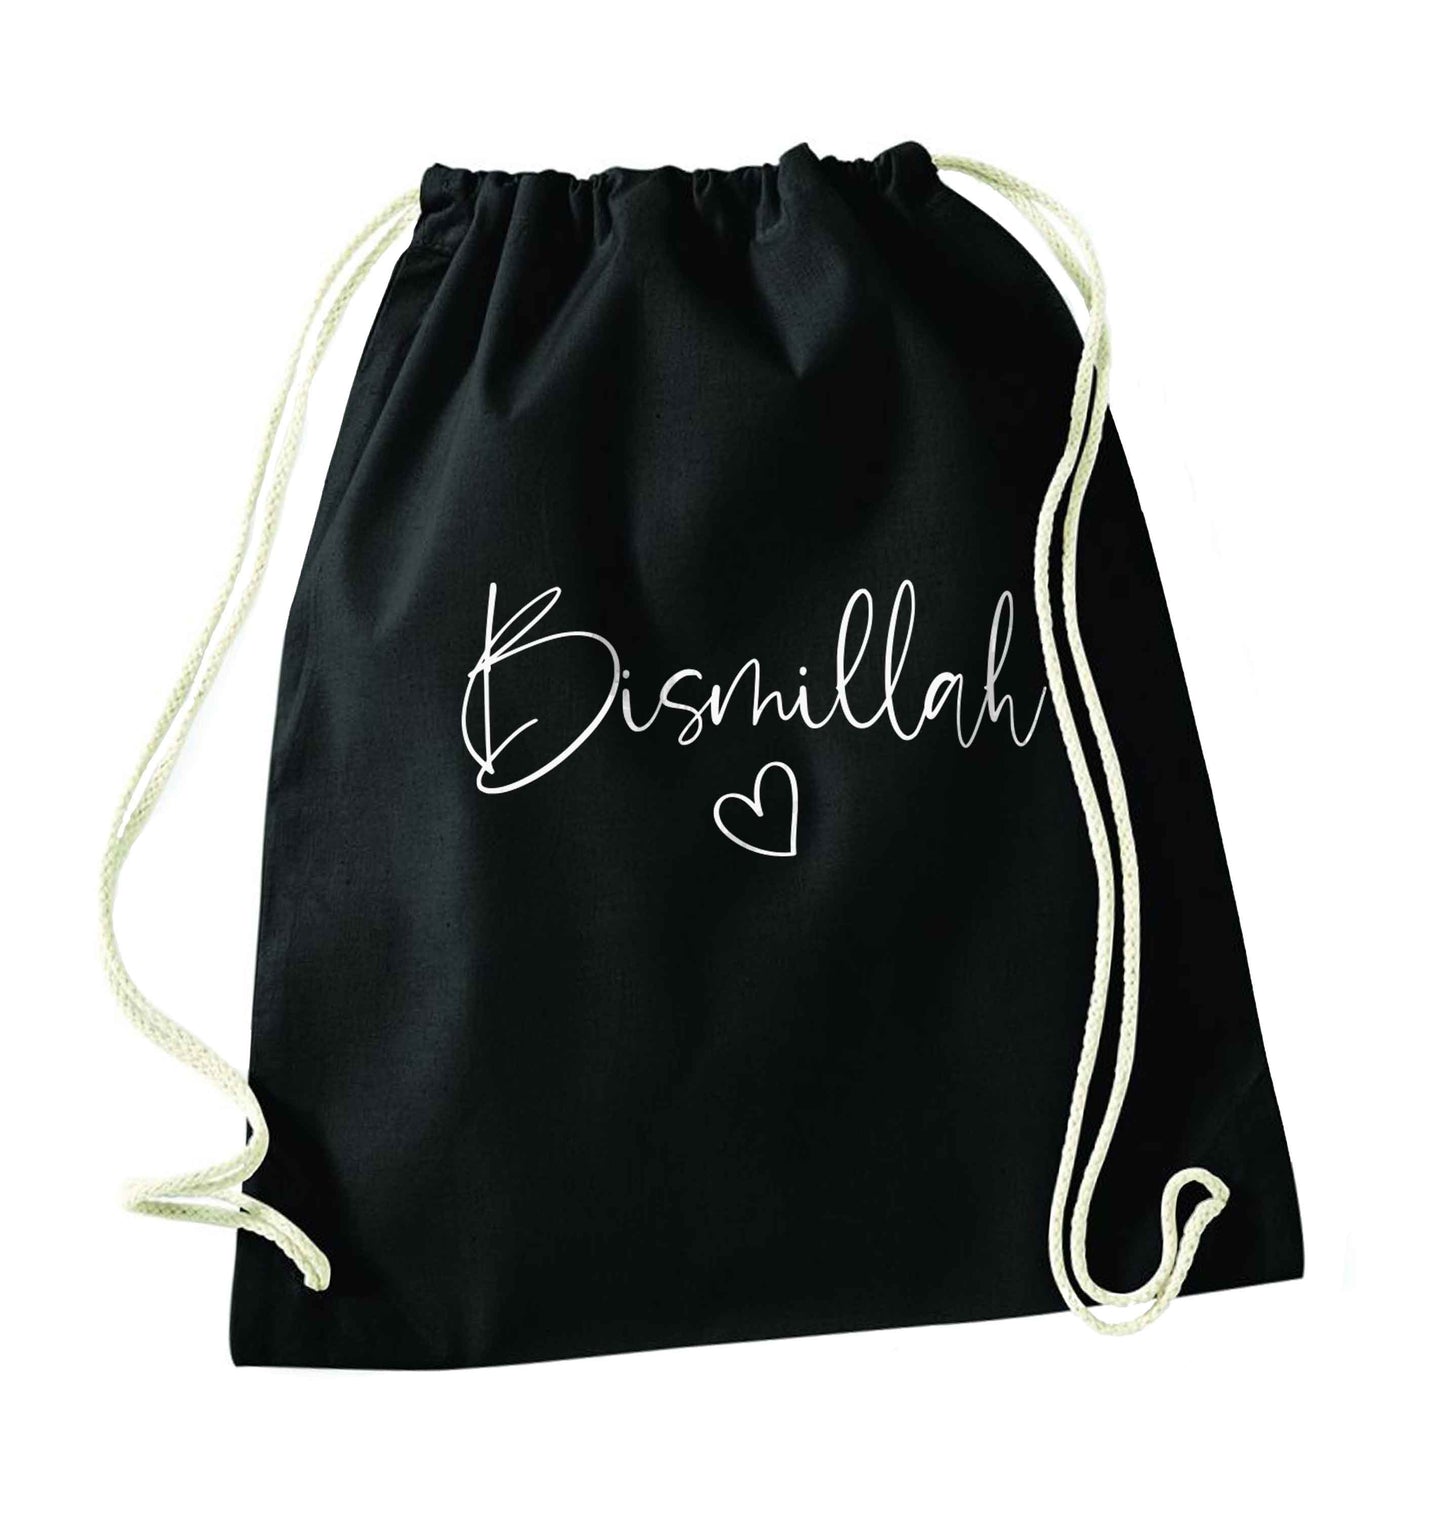 Bismillah black drawstring bag